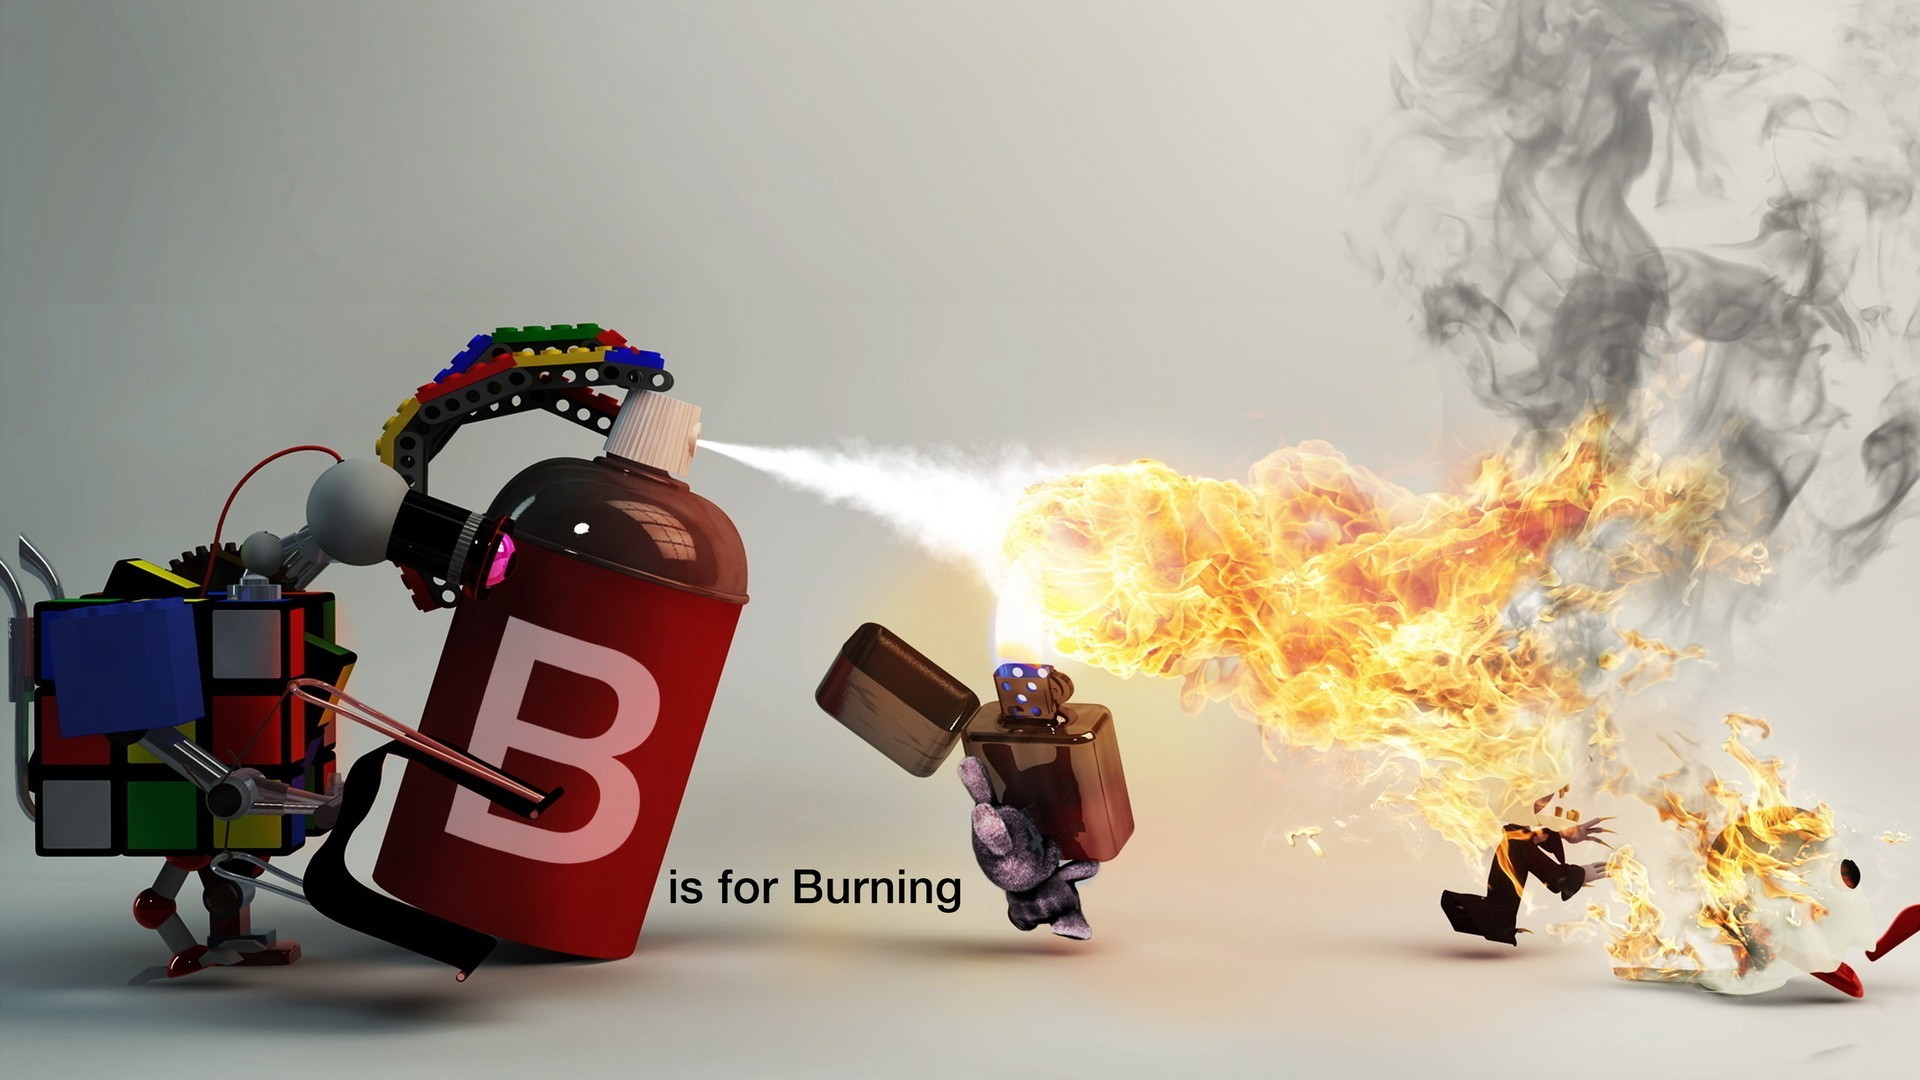 Fire Zippo Spray Burning Rabbits LEGO 1920x1080